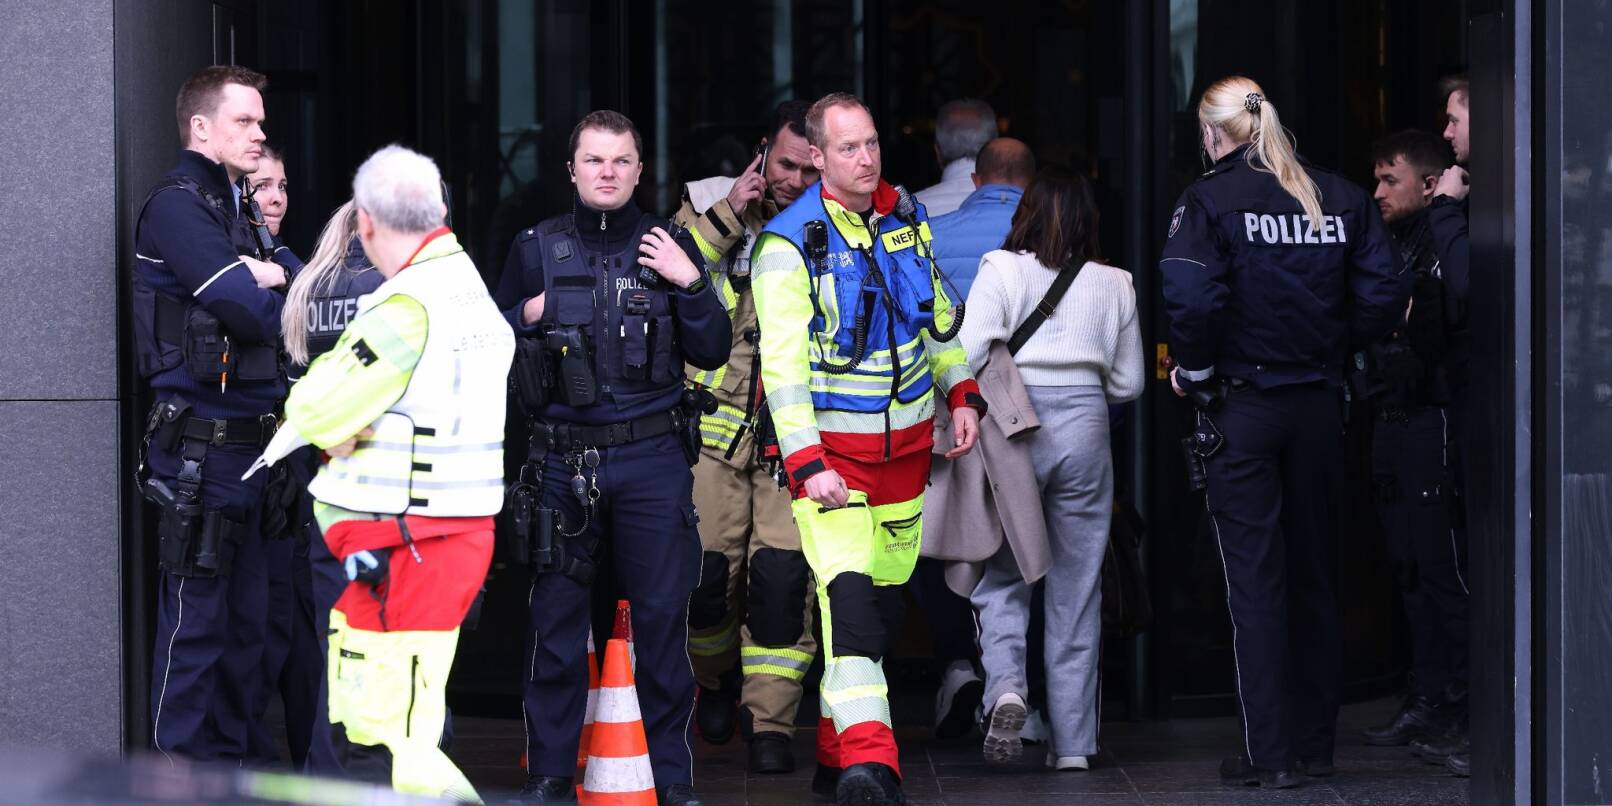 Einsatzkräfte der Polizei haben eine Eskalation an einem Hotel in Düsseldorf verhindert.